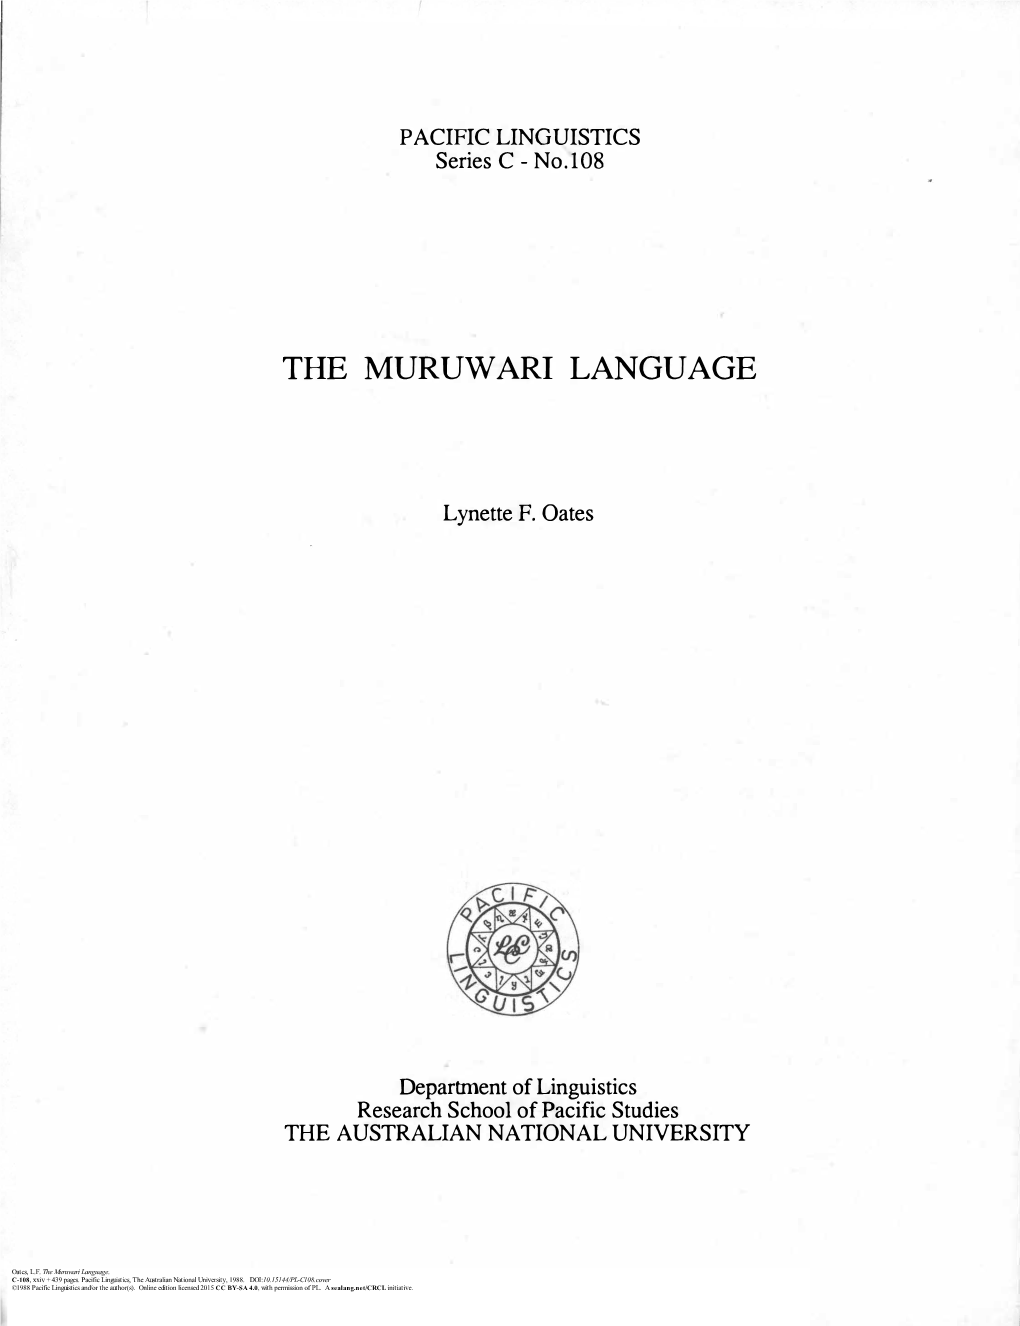 The Muruwari Language